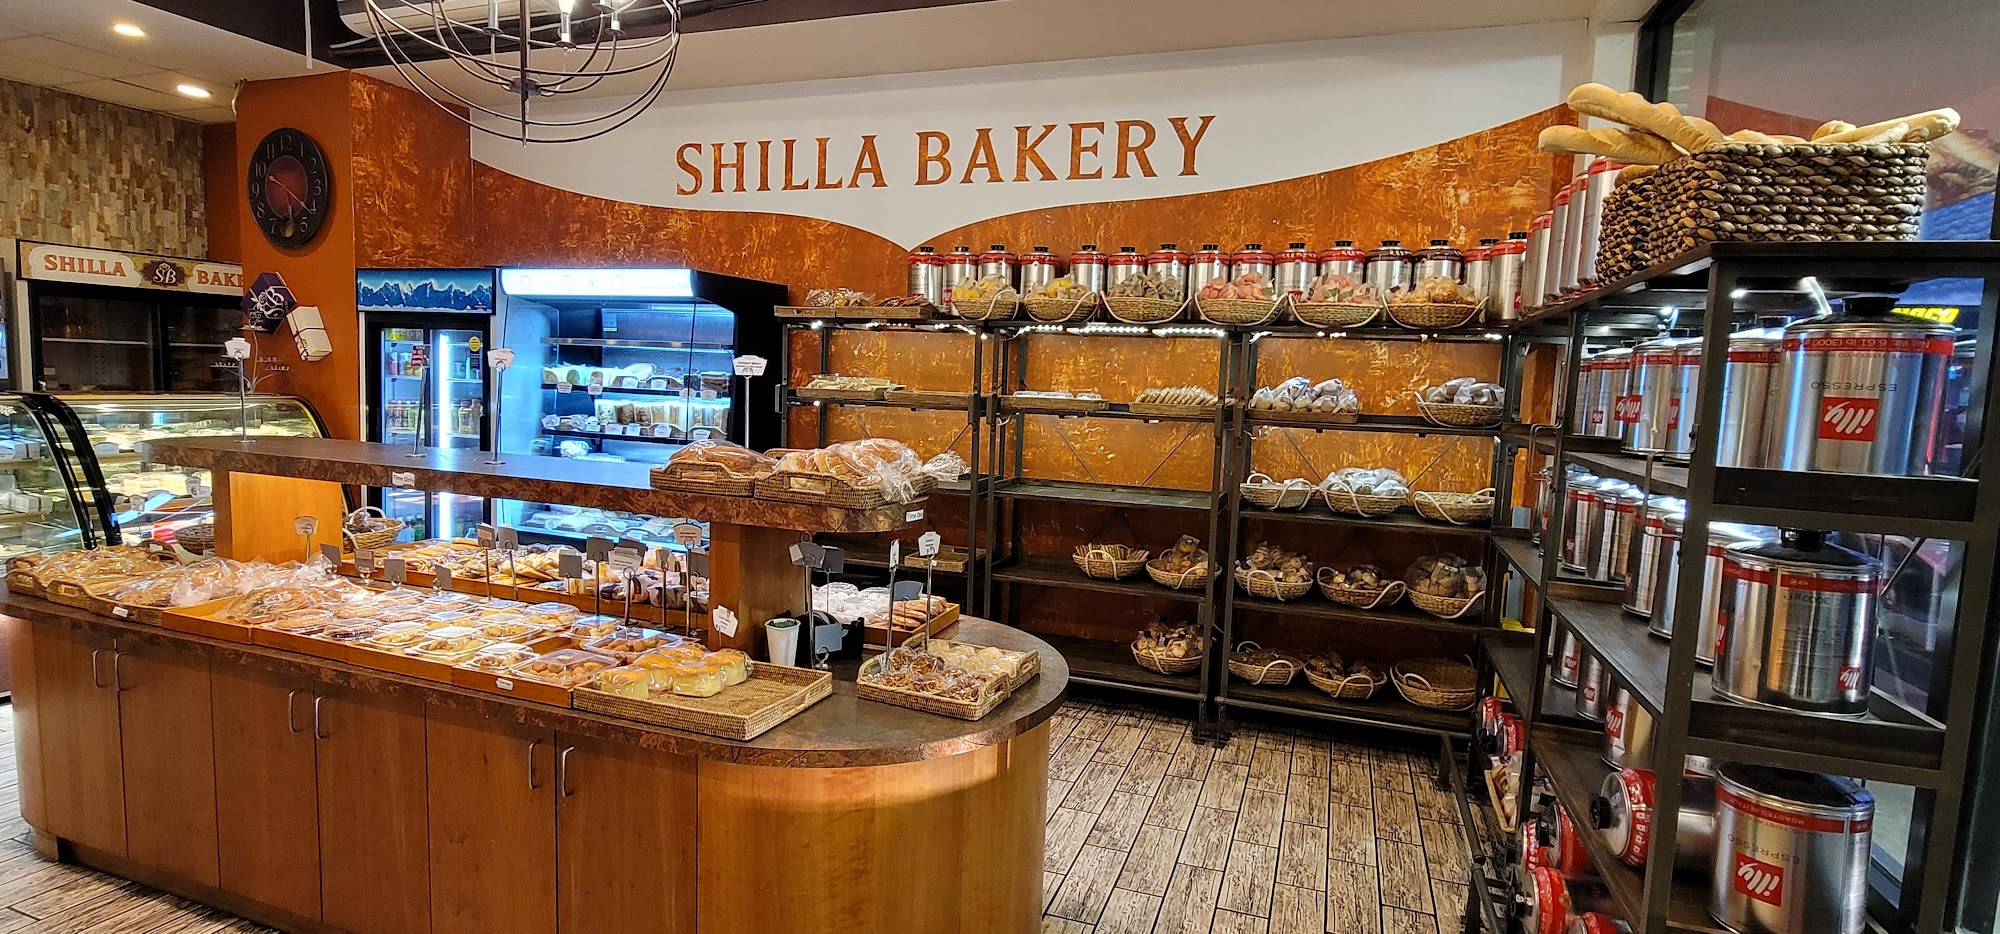 Shilla Bakery